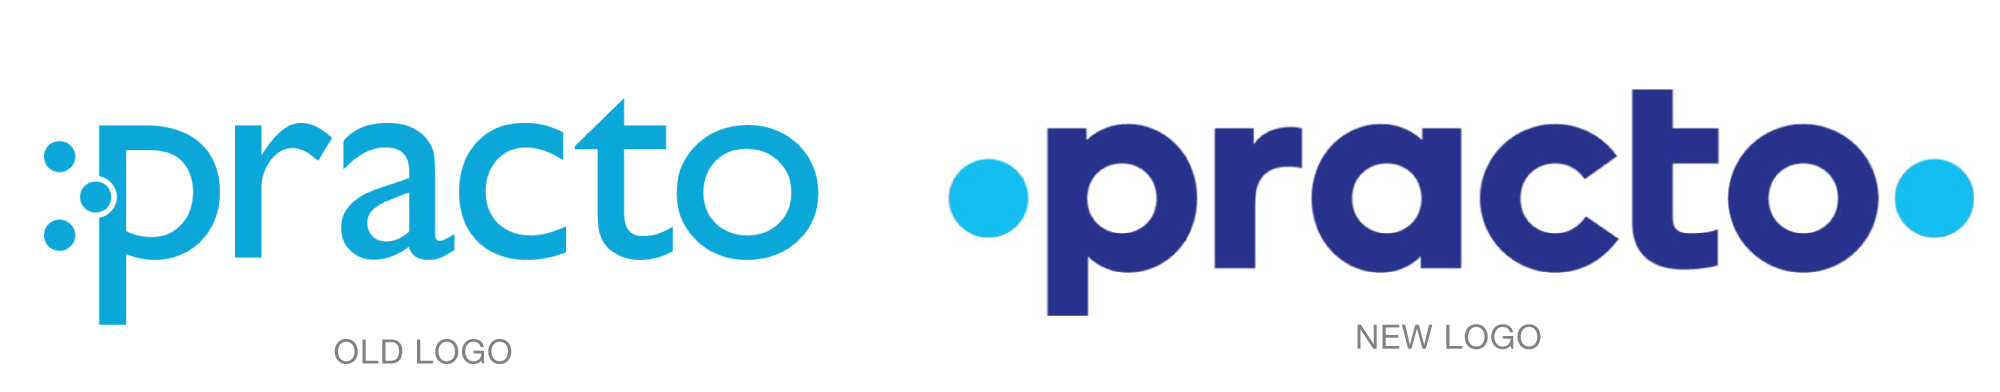 Old vs. New Logo